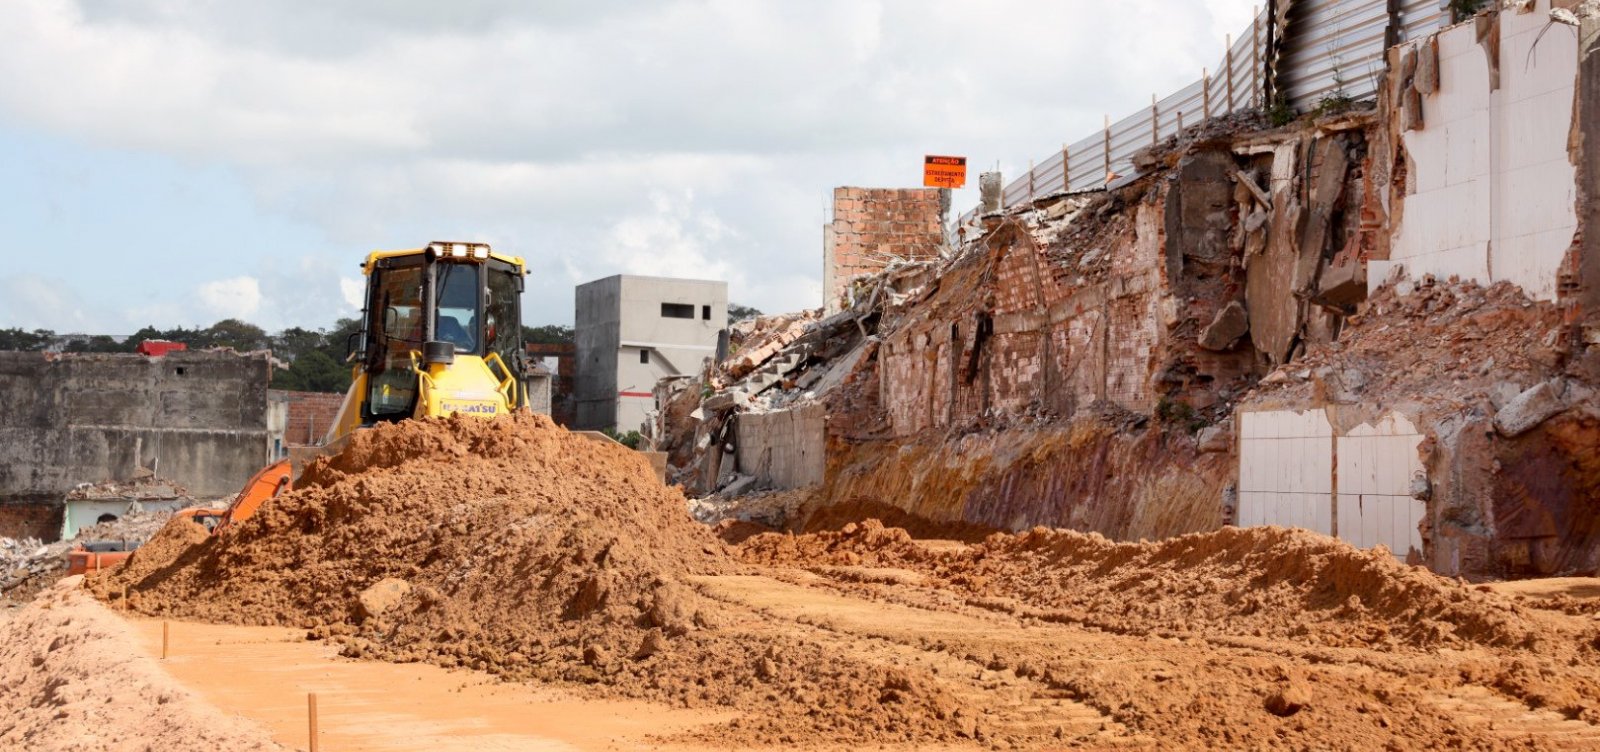 Da vanguarda ambiental ao concreto: Com fundação do Cepram, Bahia foi pioneira no debate sobre meio ambiente